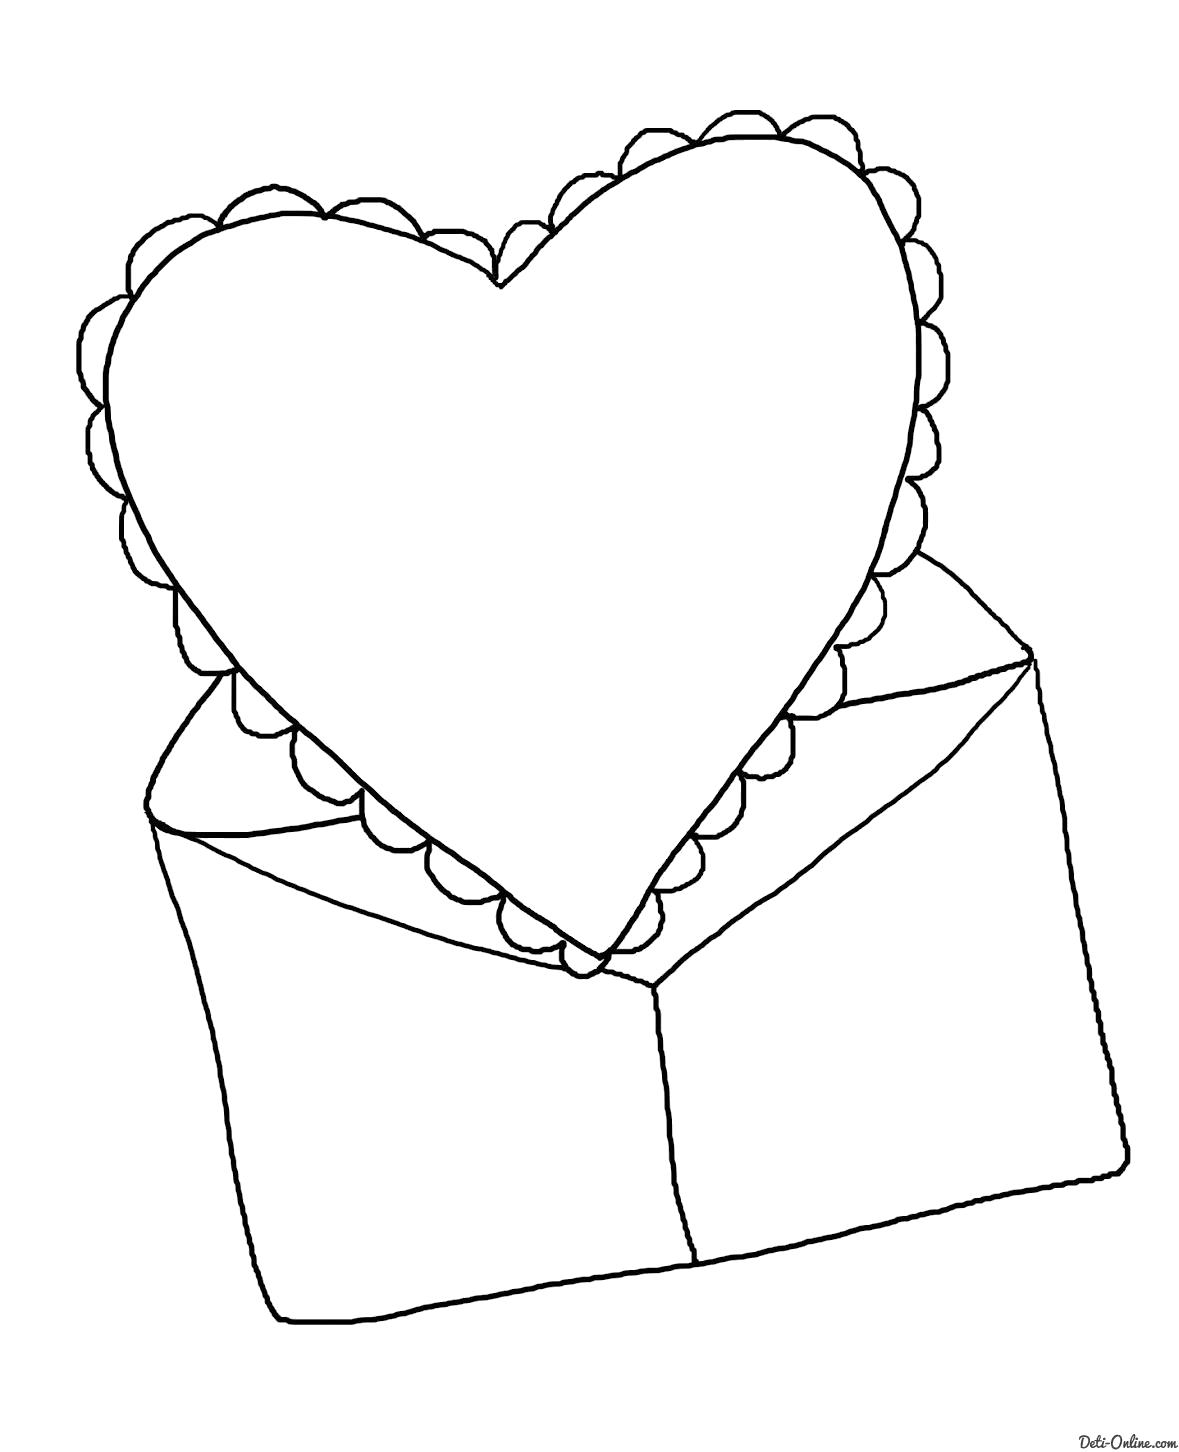 Раскраска  Валентинка в конверте. Скачать день Святого Валентина.  Распечатать день Святого Валентина